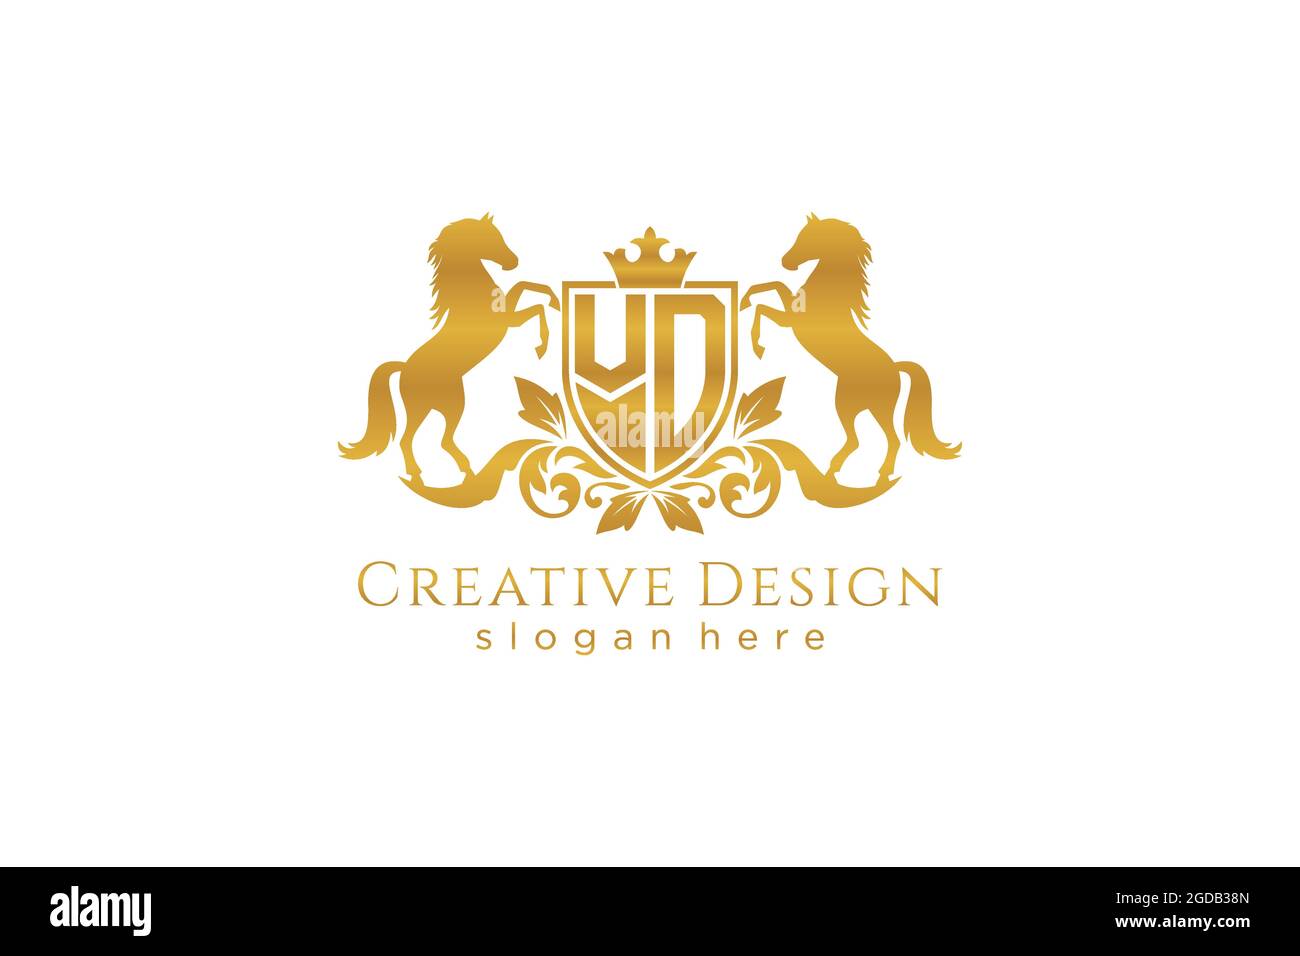 VD Retro goldenes Wappen mit Schild und zwei Pferden, Badge-Vorlage mit Rollen und königlicher Krone - perfekt für luxuriöse Branding-Projekte Stock Vektor